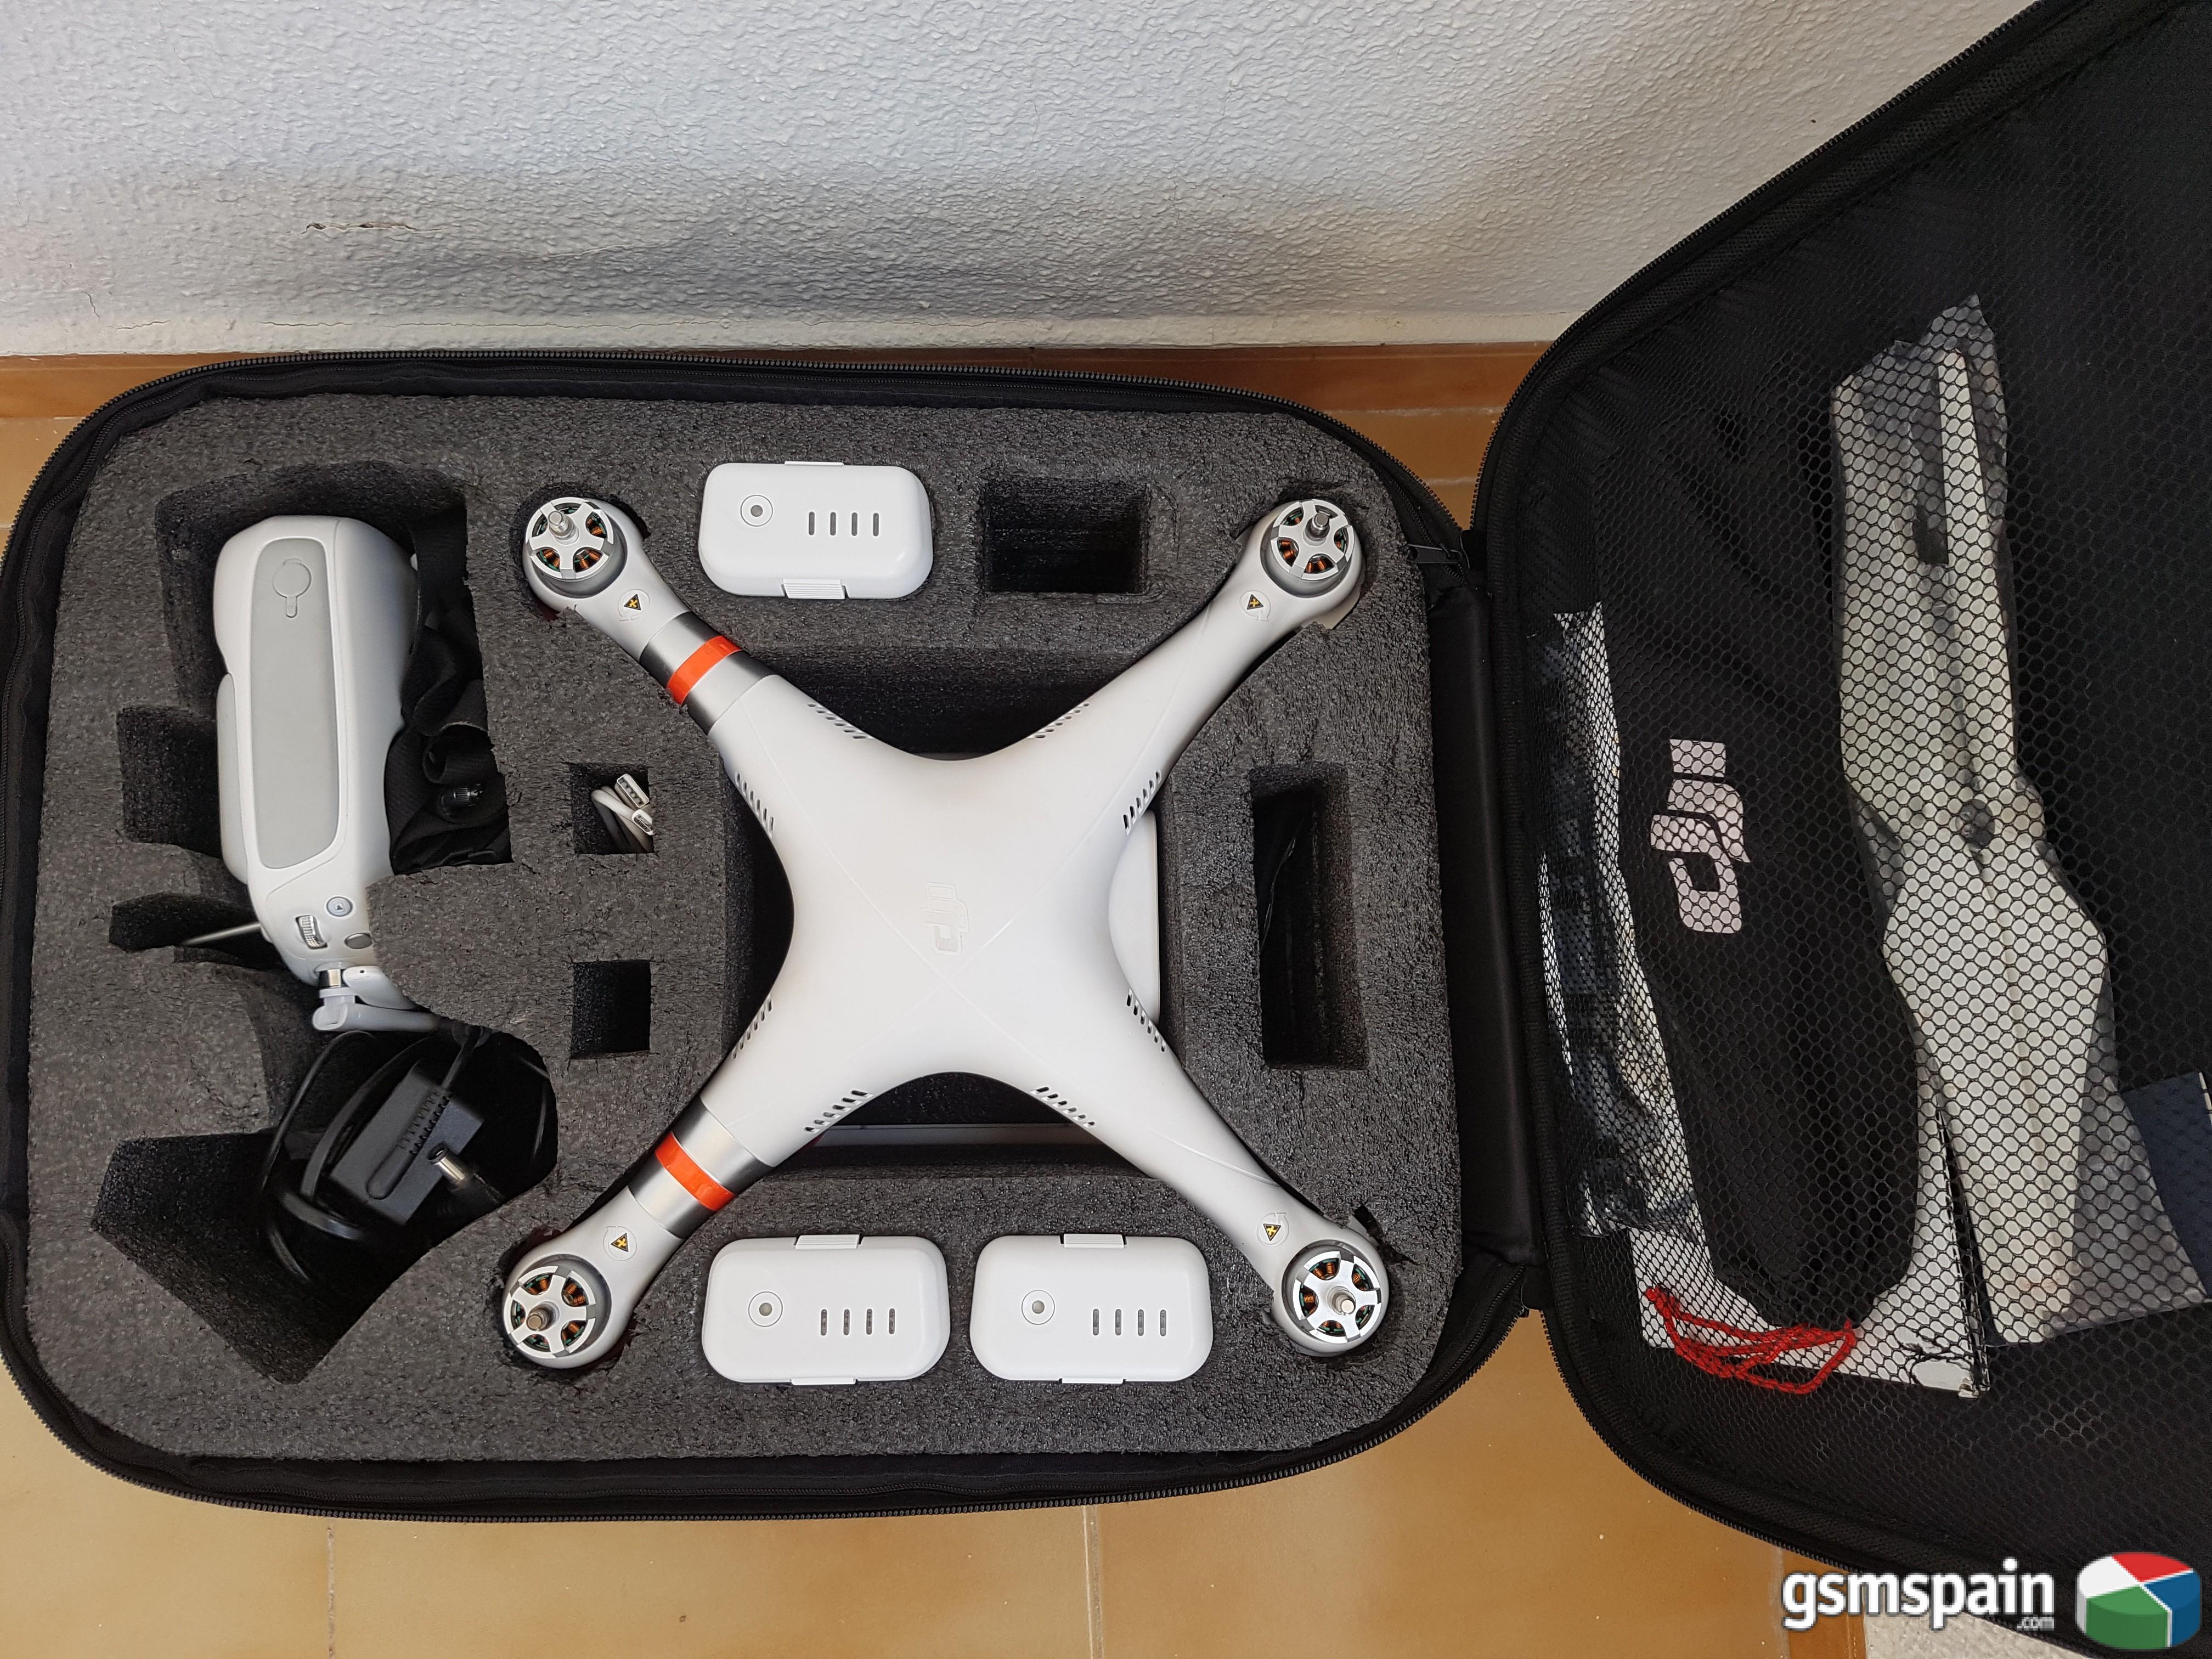 [VENDO] DRONE DJI Phantom 3 Advanced con accesorios